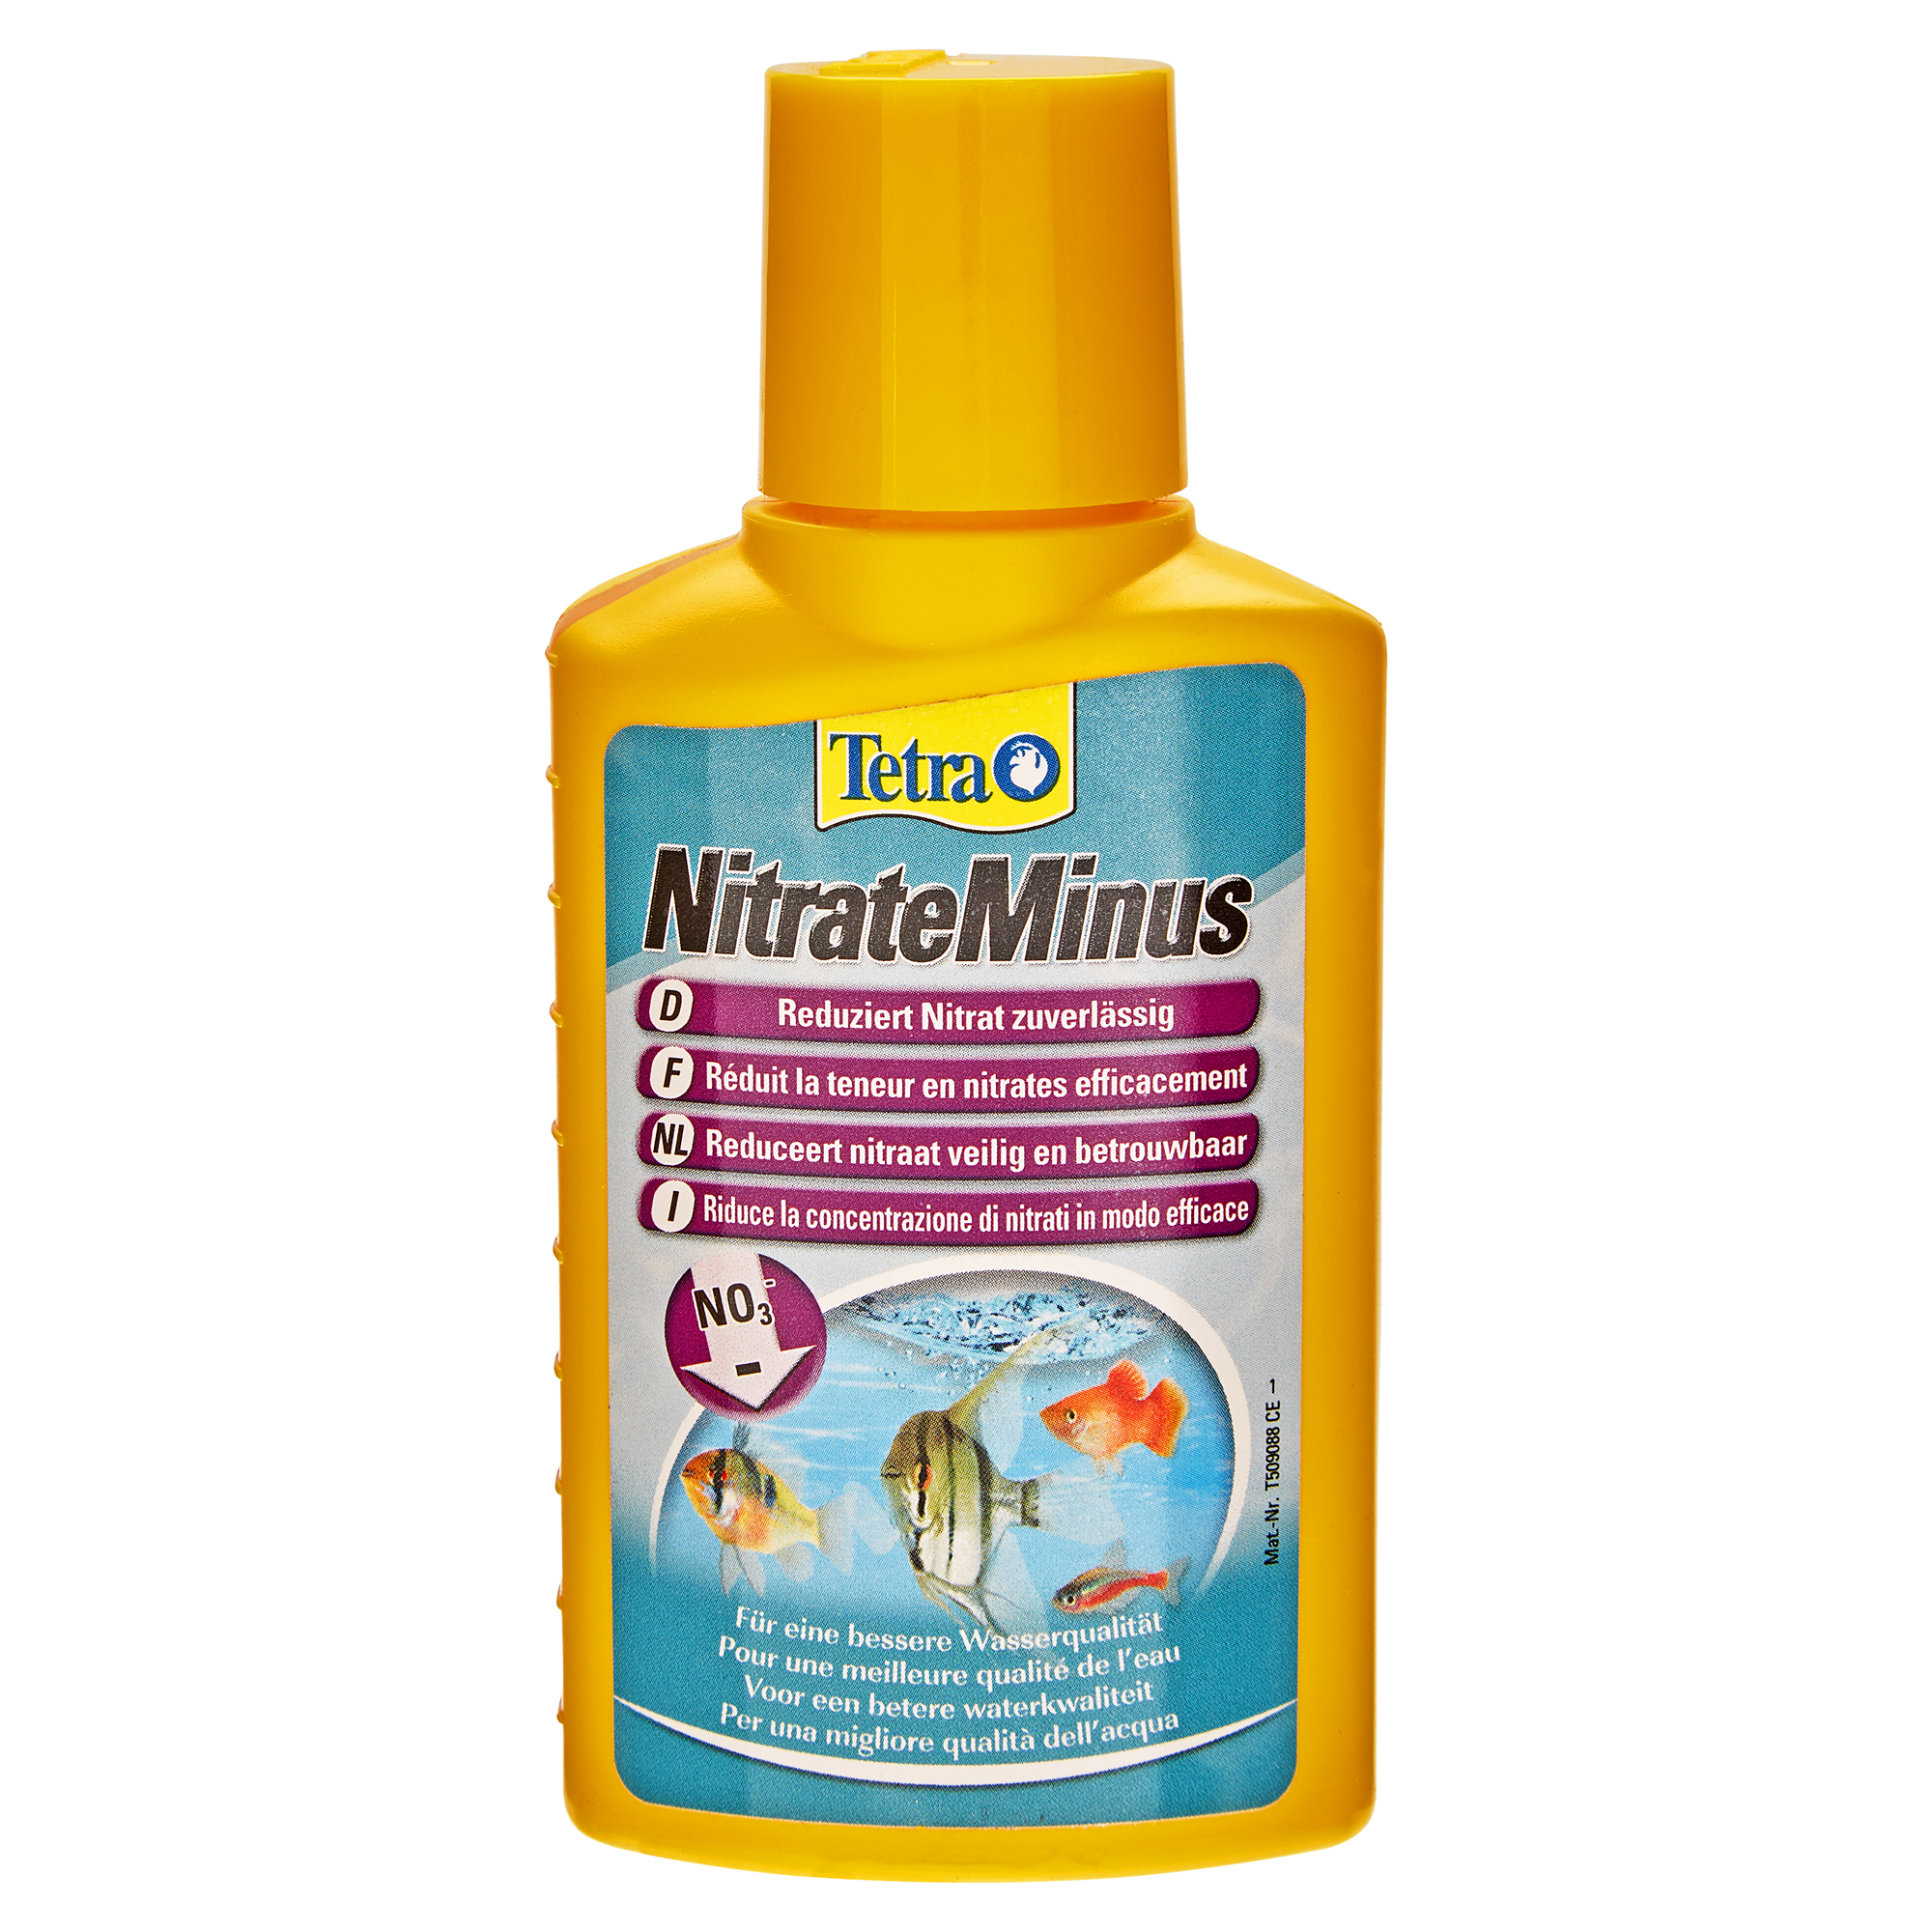 Wasseraufbereiter "NitrateMinus" 100 ml + product picture